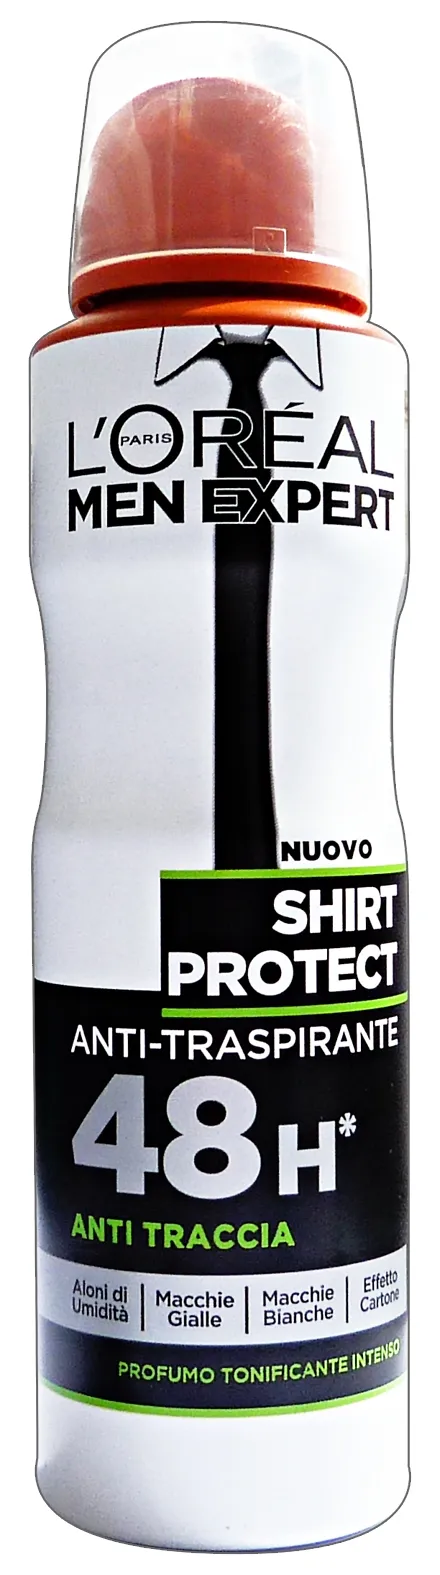 "L'OREAL Deodorante Spray Uomo Shirt Protect 150 ml"